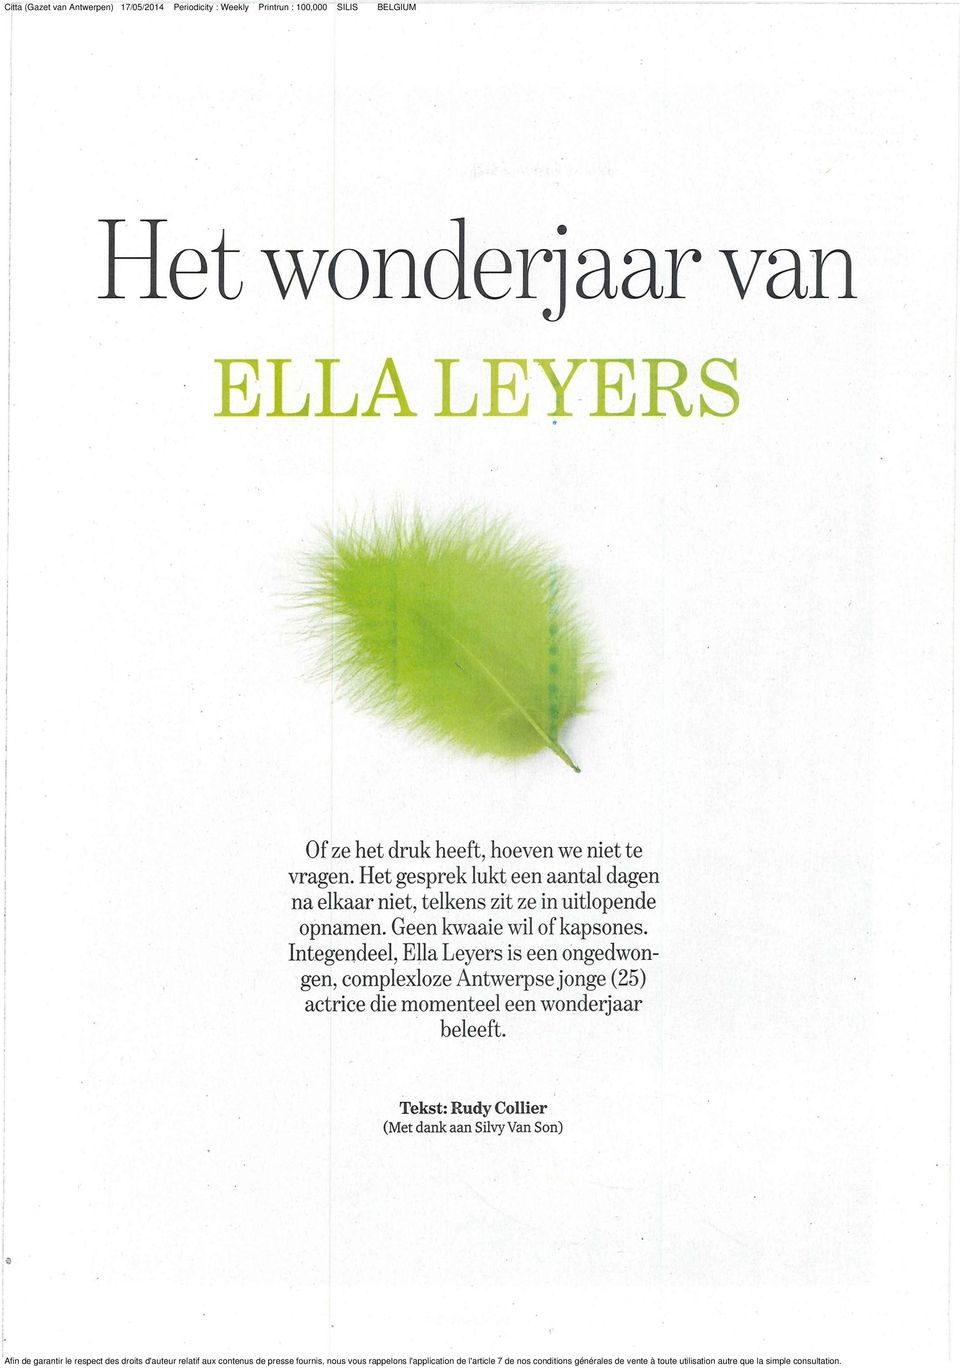 of kapsones Integendeel, Ella Leyers is een ongedwongen, complexloze Antwerpse jonge (25)